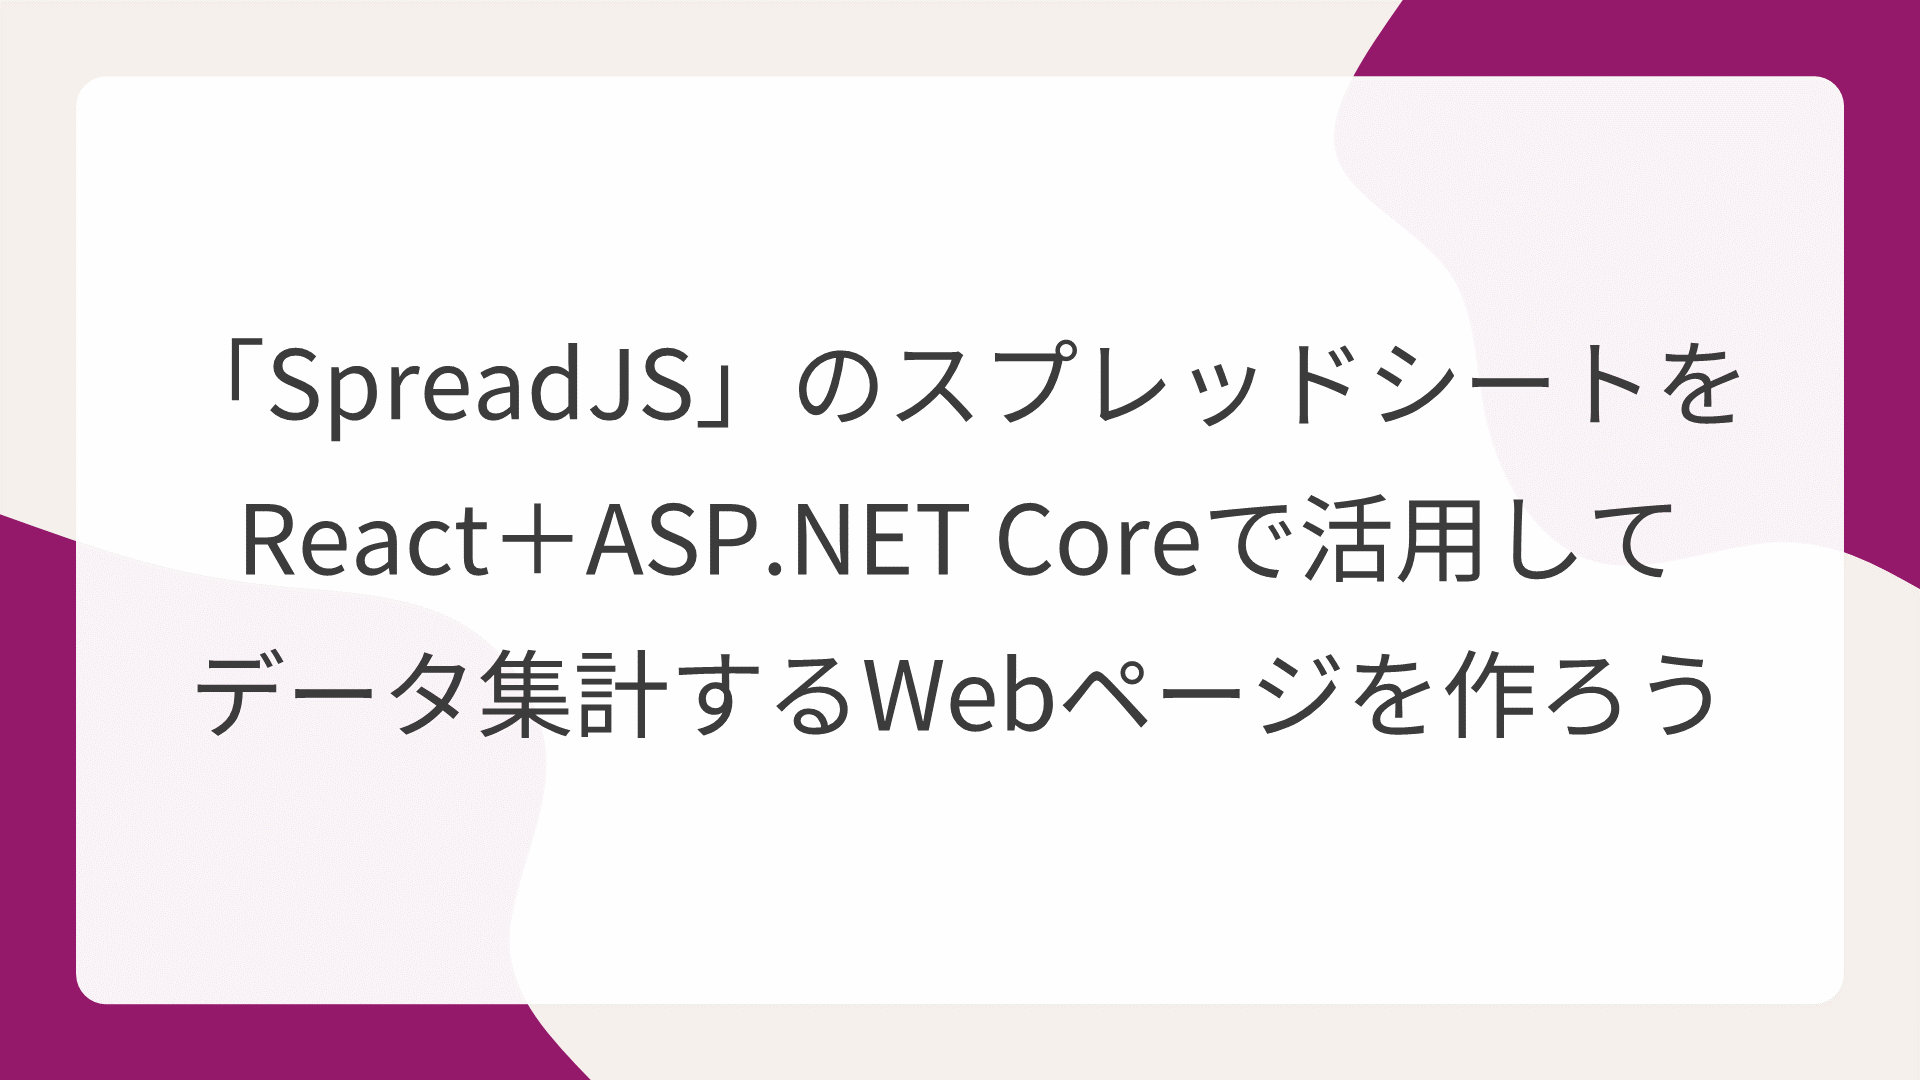 「SpreadJS」のスプレッドシートをReact＋ASP.NET Coreで活用してデータ集計するWebページを作ろう